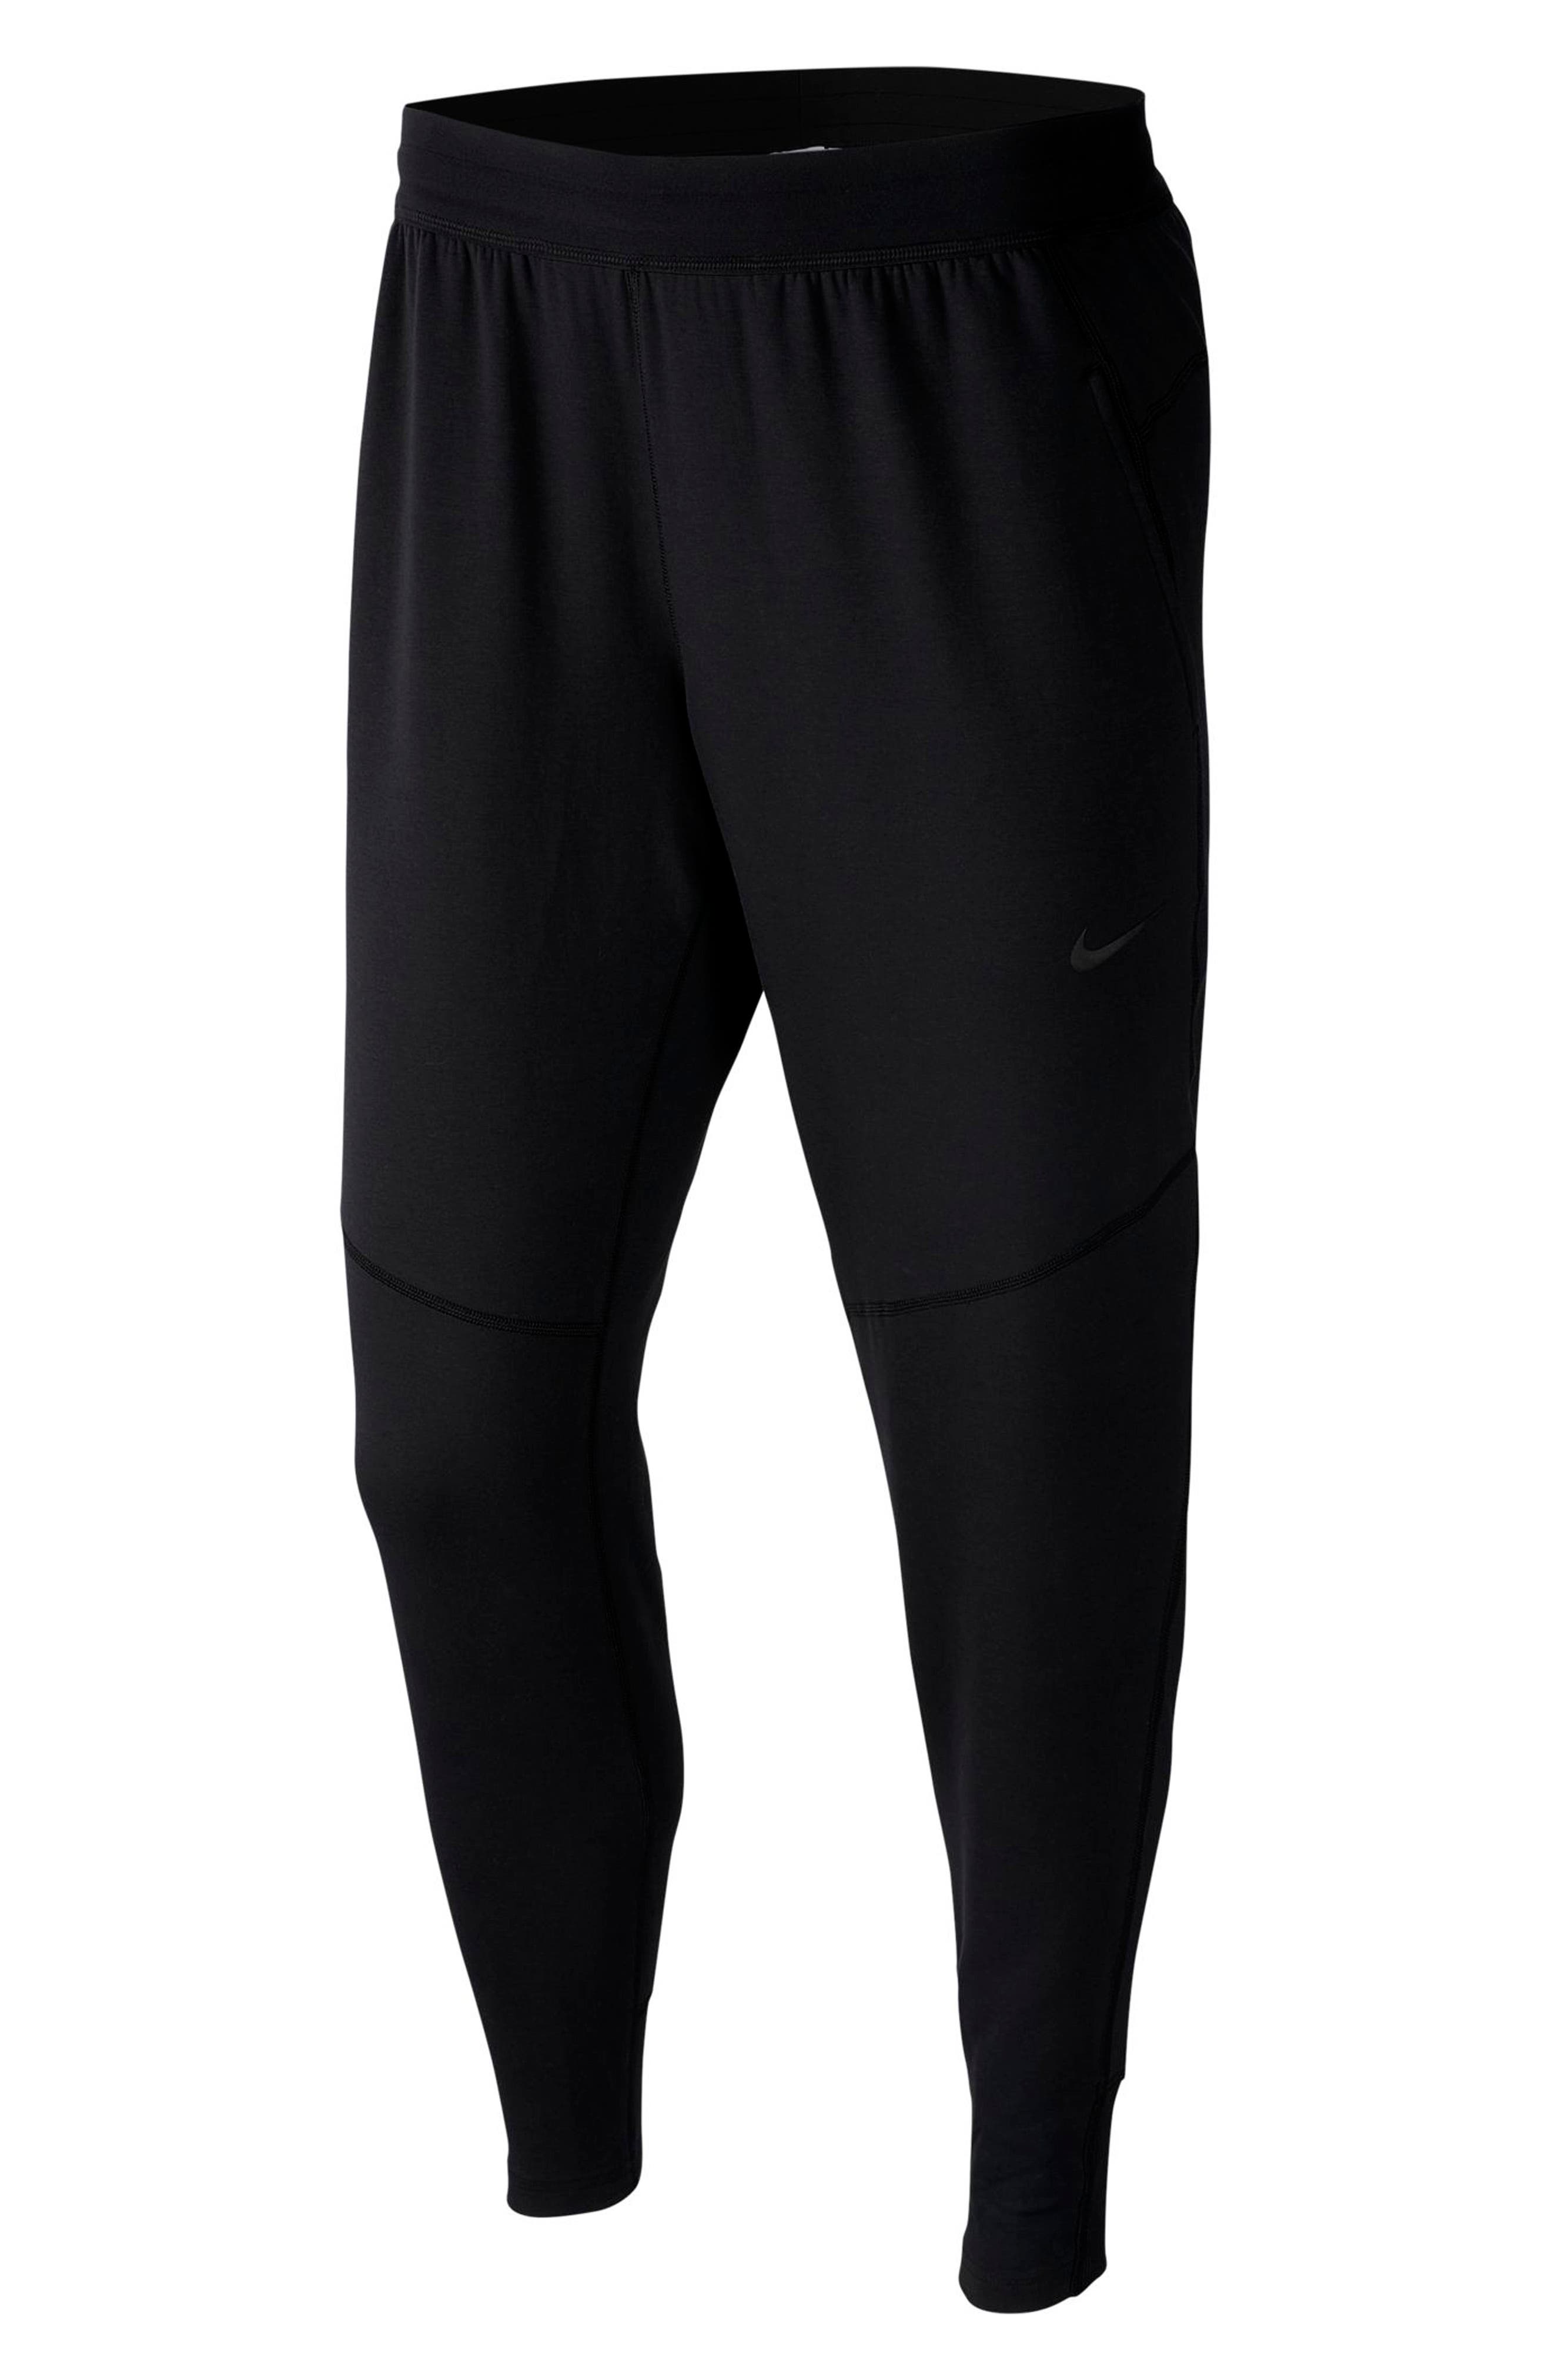 Nike Men's Dry HyperDry Pocket Yoga 